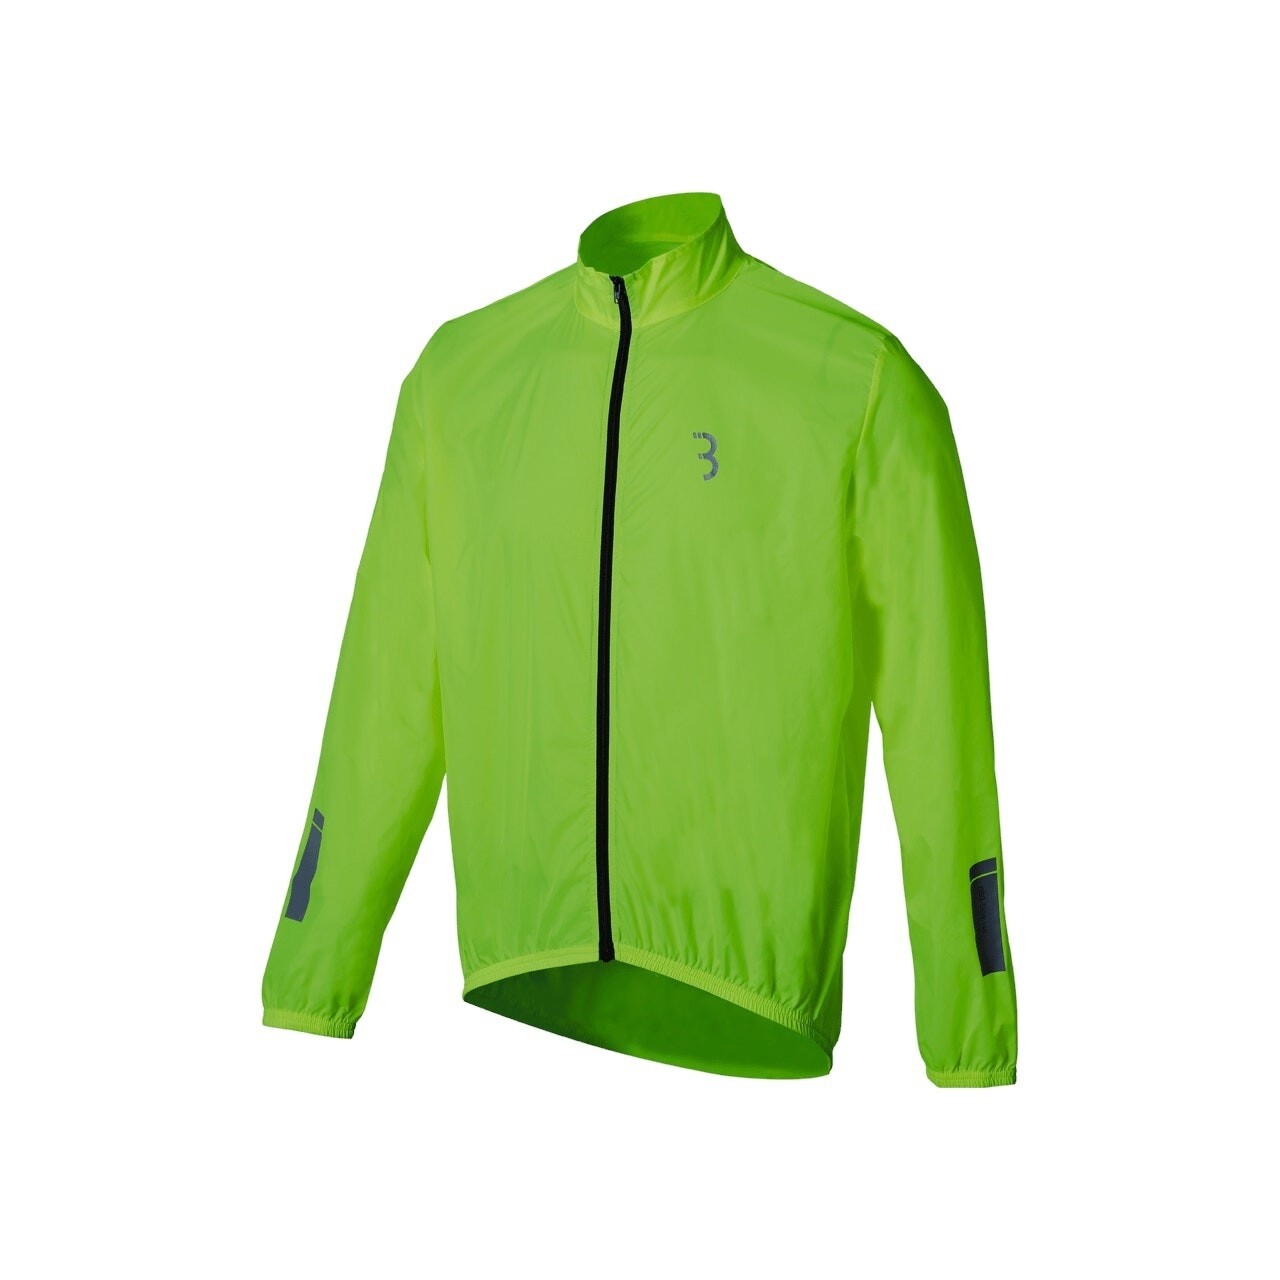 BaseShield Cycling Rain Jacket, Size: Small